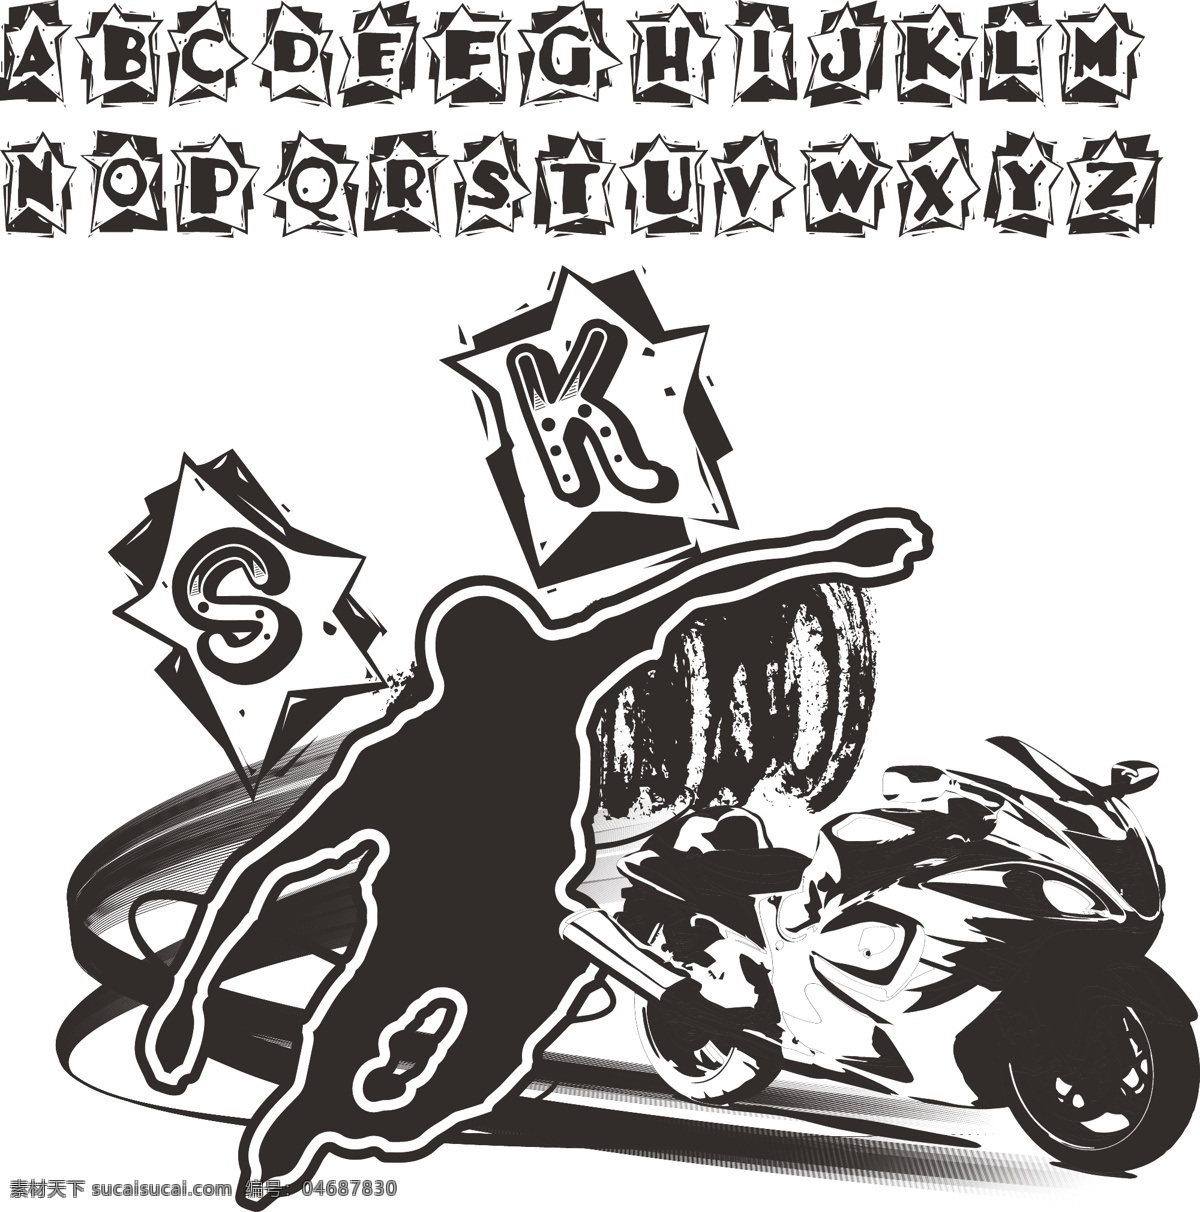 英文 字母 logo 背景 标志花纹 底纹 黑白 极速 溜冰 sk 轮滑 飚车 标志 炫酷 摩托 飙车 墨色 线条 图案 摩托设计 矢量 拉风 卫衣图案 其他设计 矢量图 艺术字